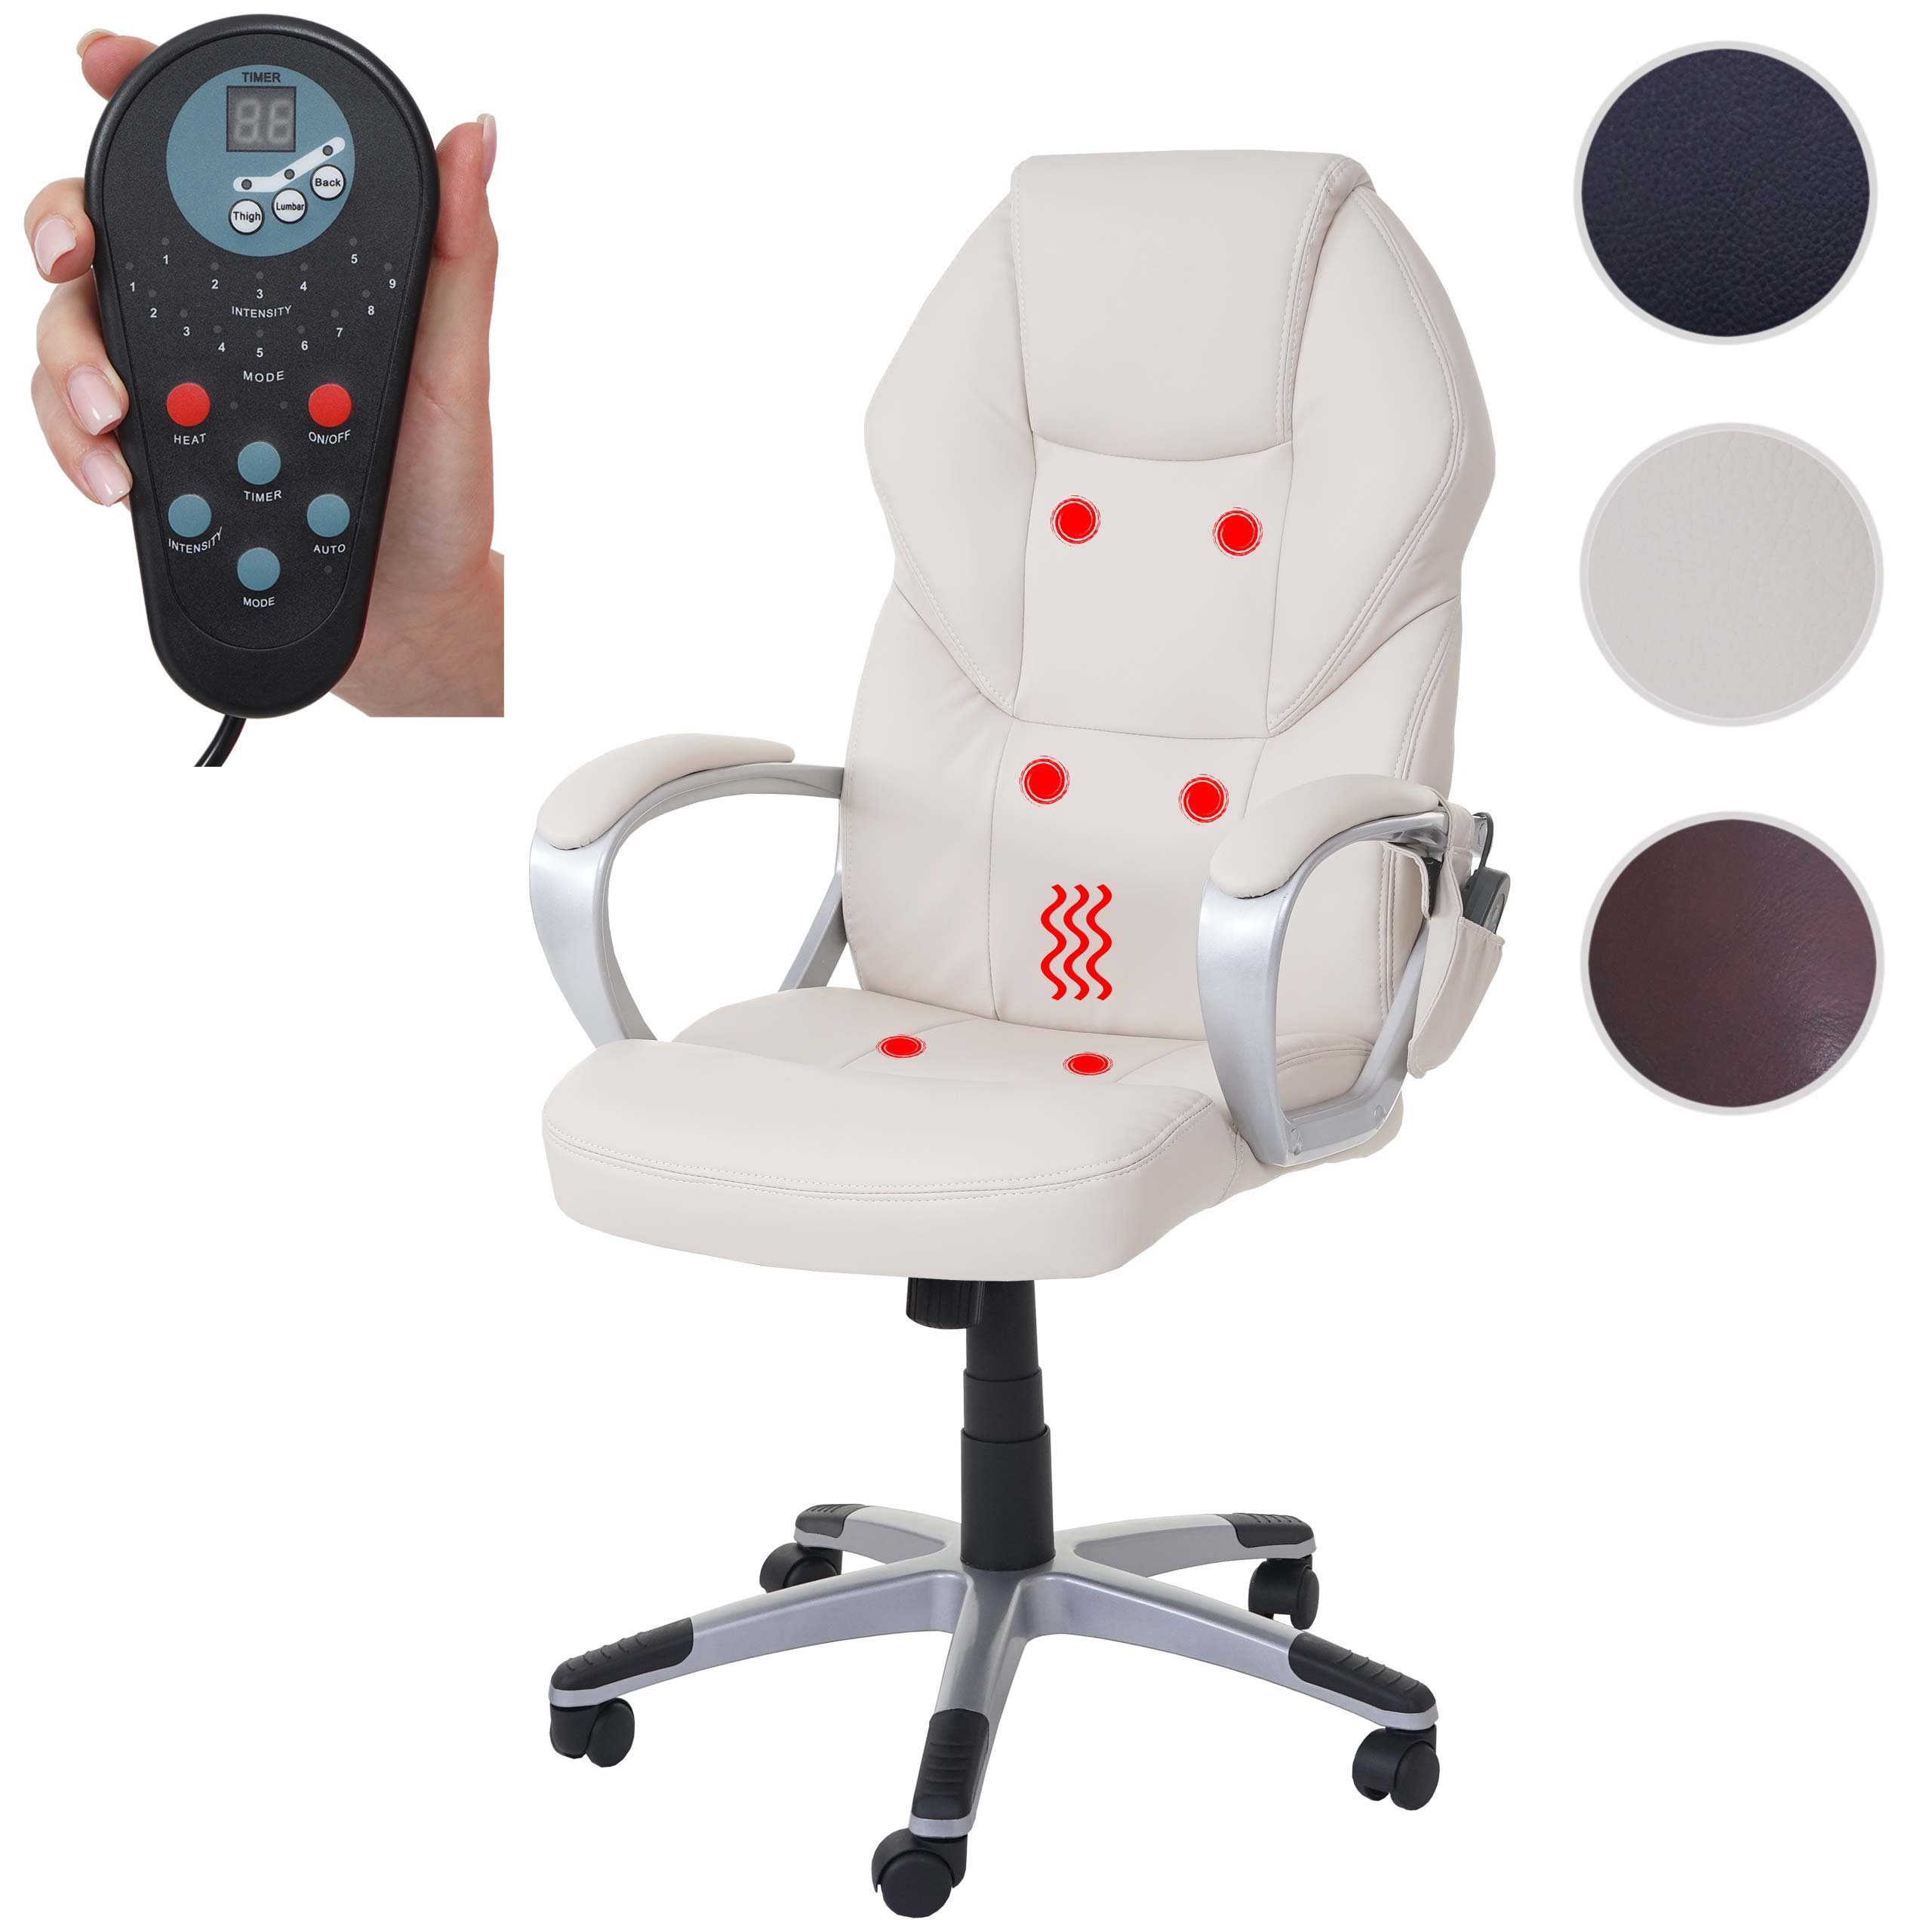 MCW Schreibtischstuhl MCW-A69, 6-Punkt-Massage, Heizfunktion Rückenlehne, Wippmechanik in einstellbar creme